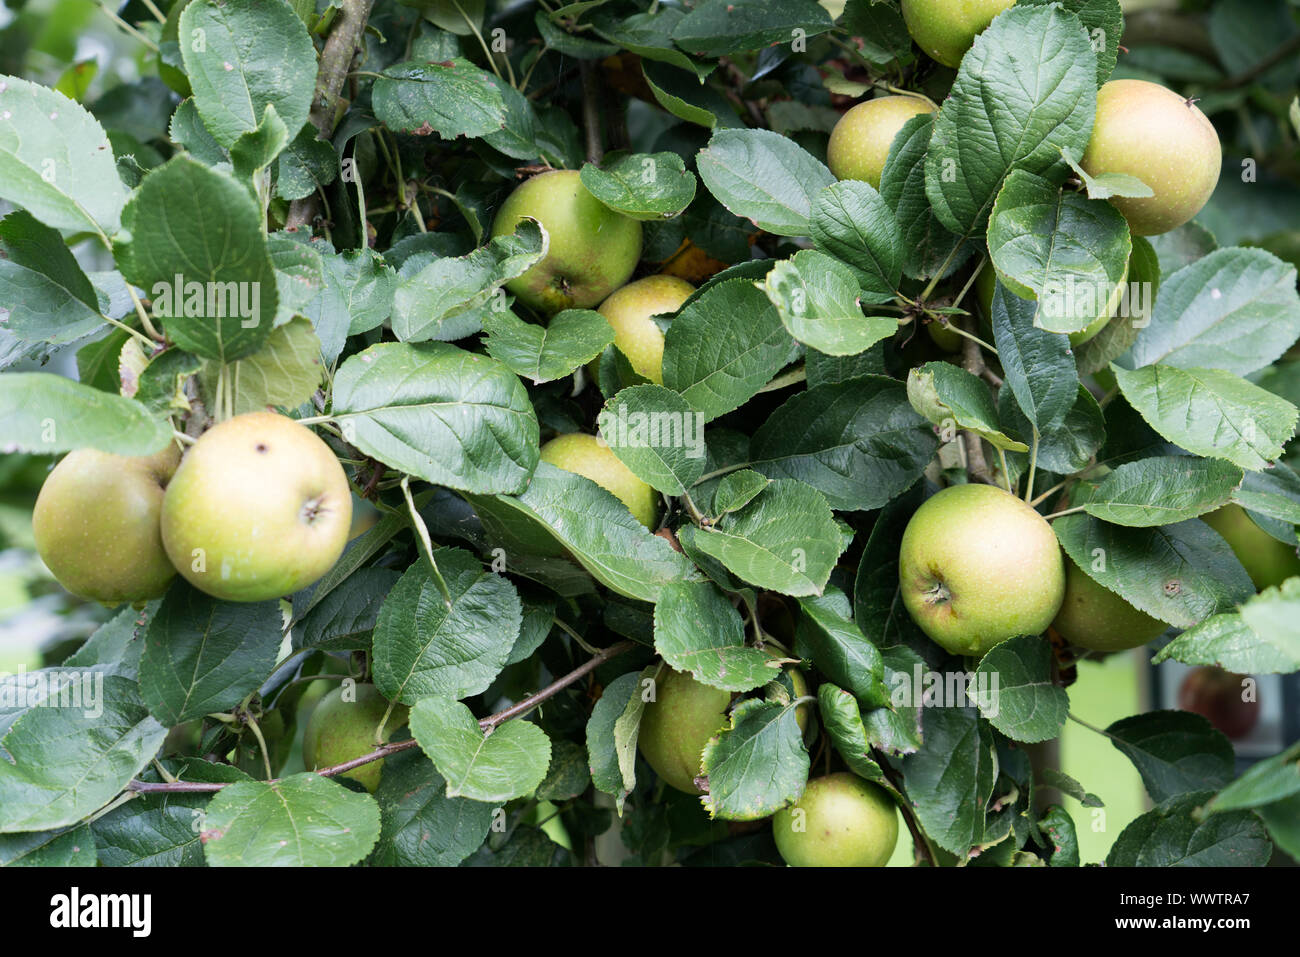 Belle de Boskoop apple, old variety, Germany, Europe; Stock Photo